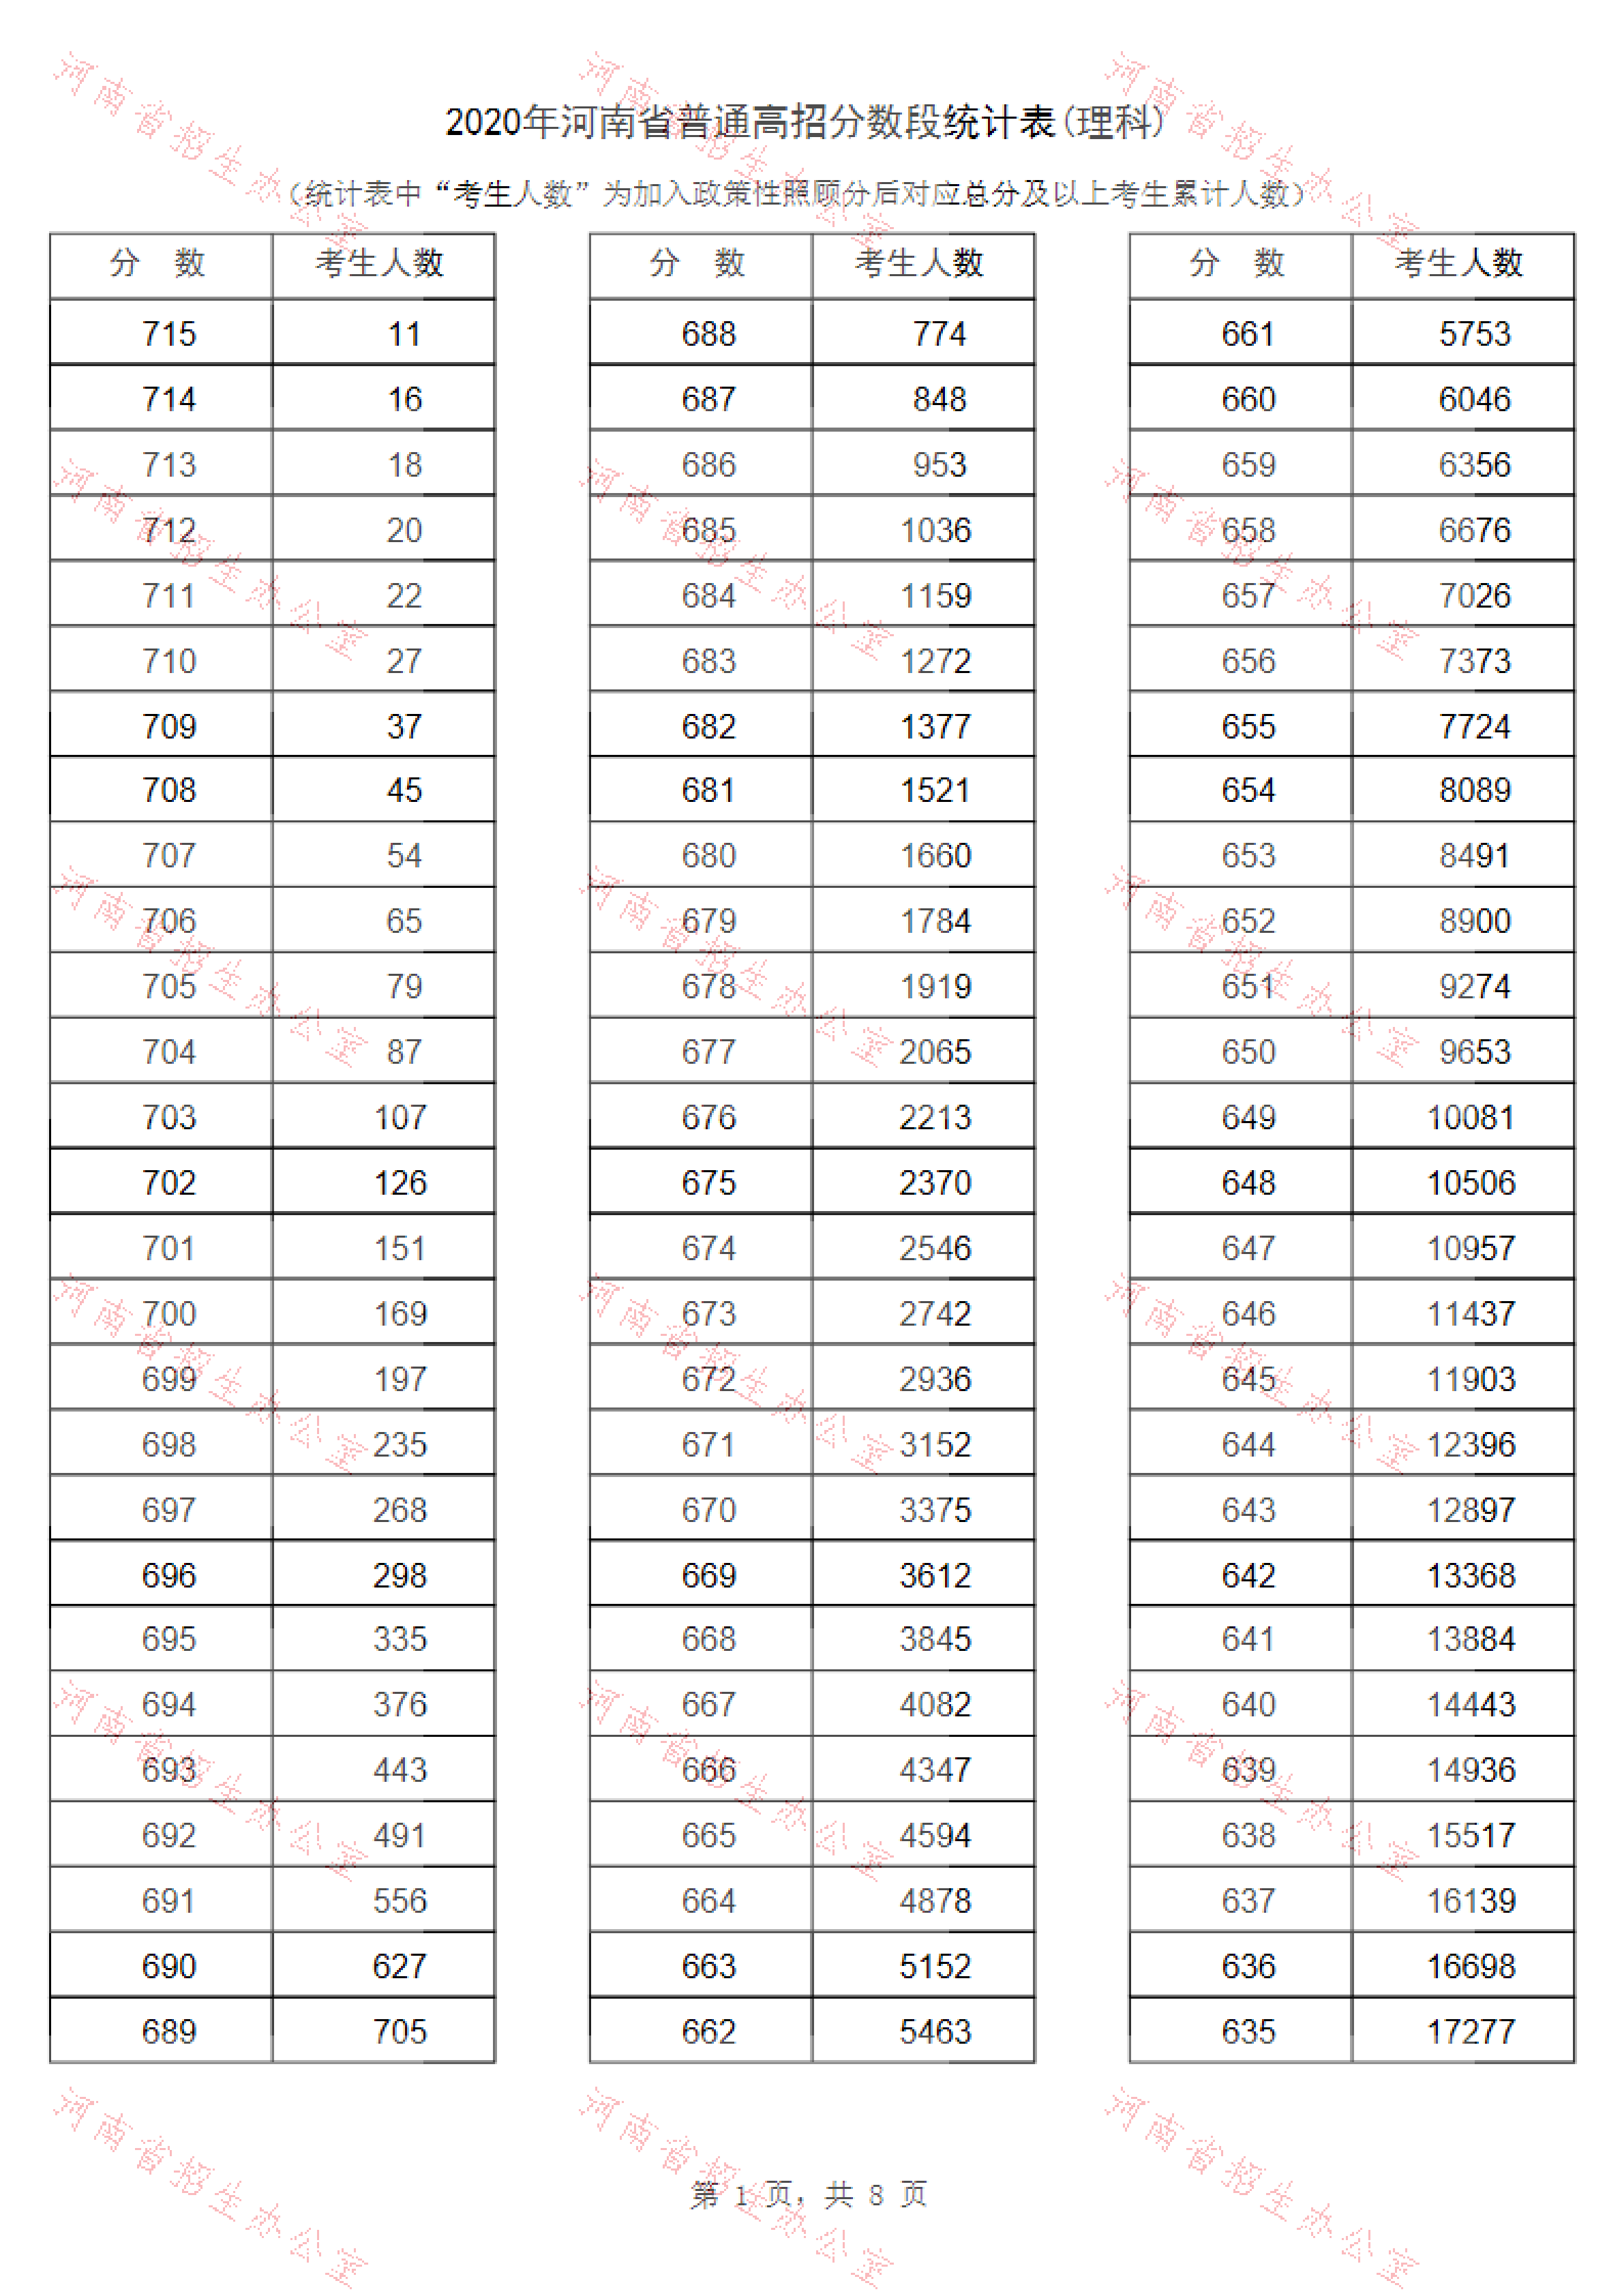 2020年河南高考理科一分一段表公布 高考成绩排名